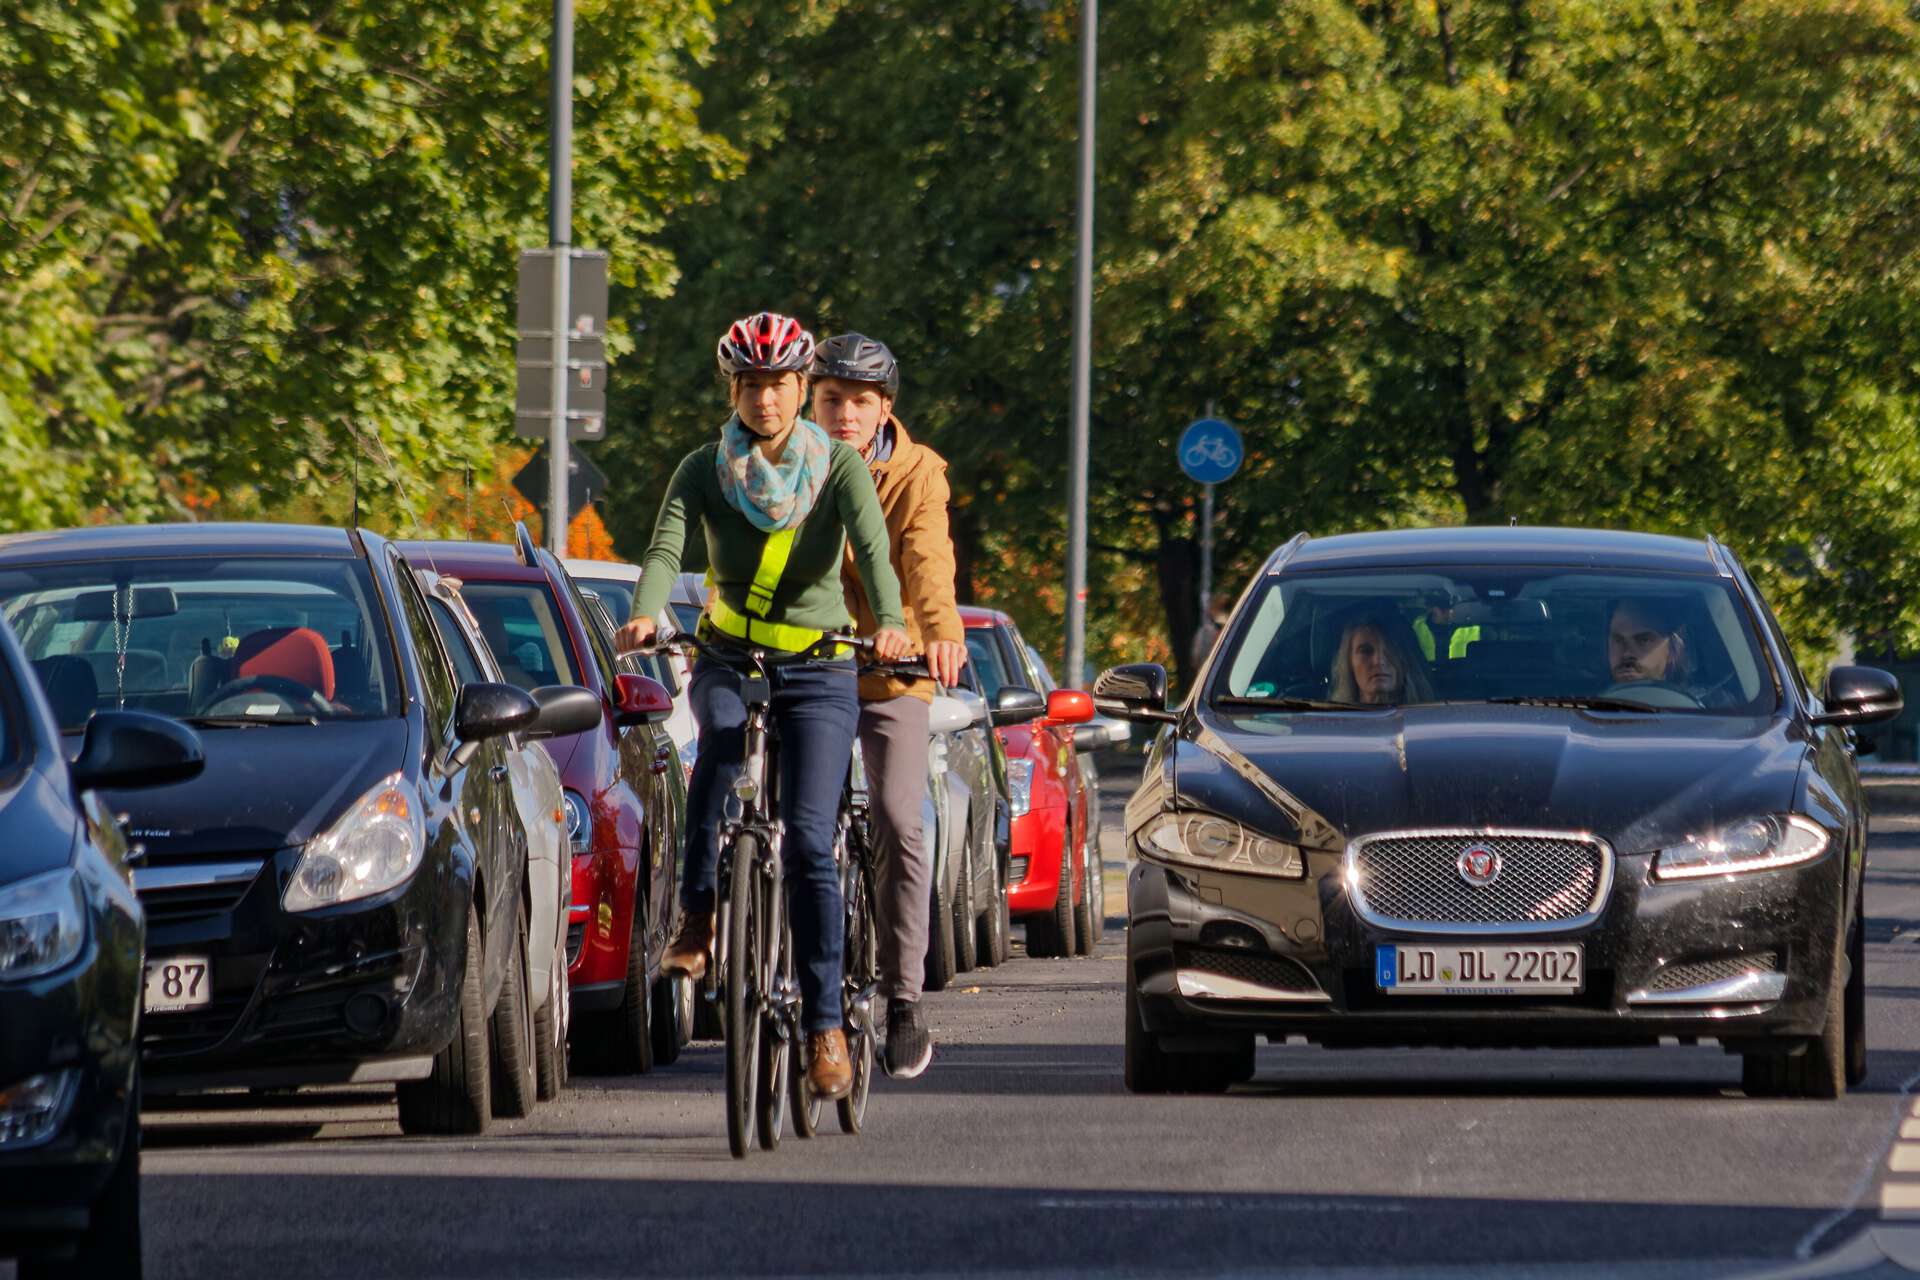 Dresden – Bild zum Thema Verkehrrsicherheit. Fotosession mit VBG-Beschäftigten.